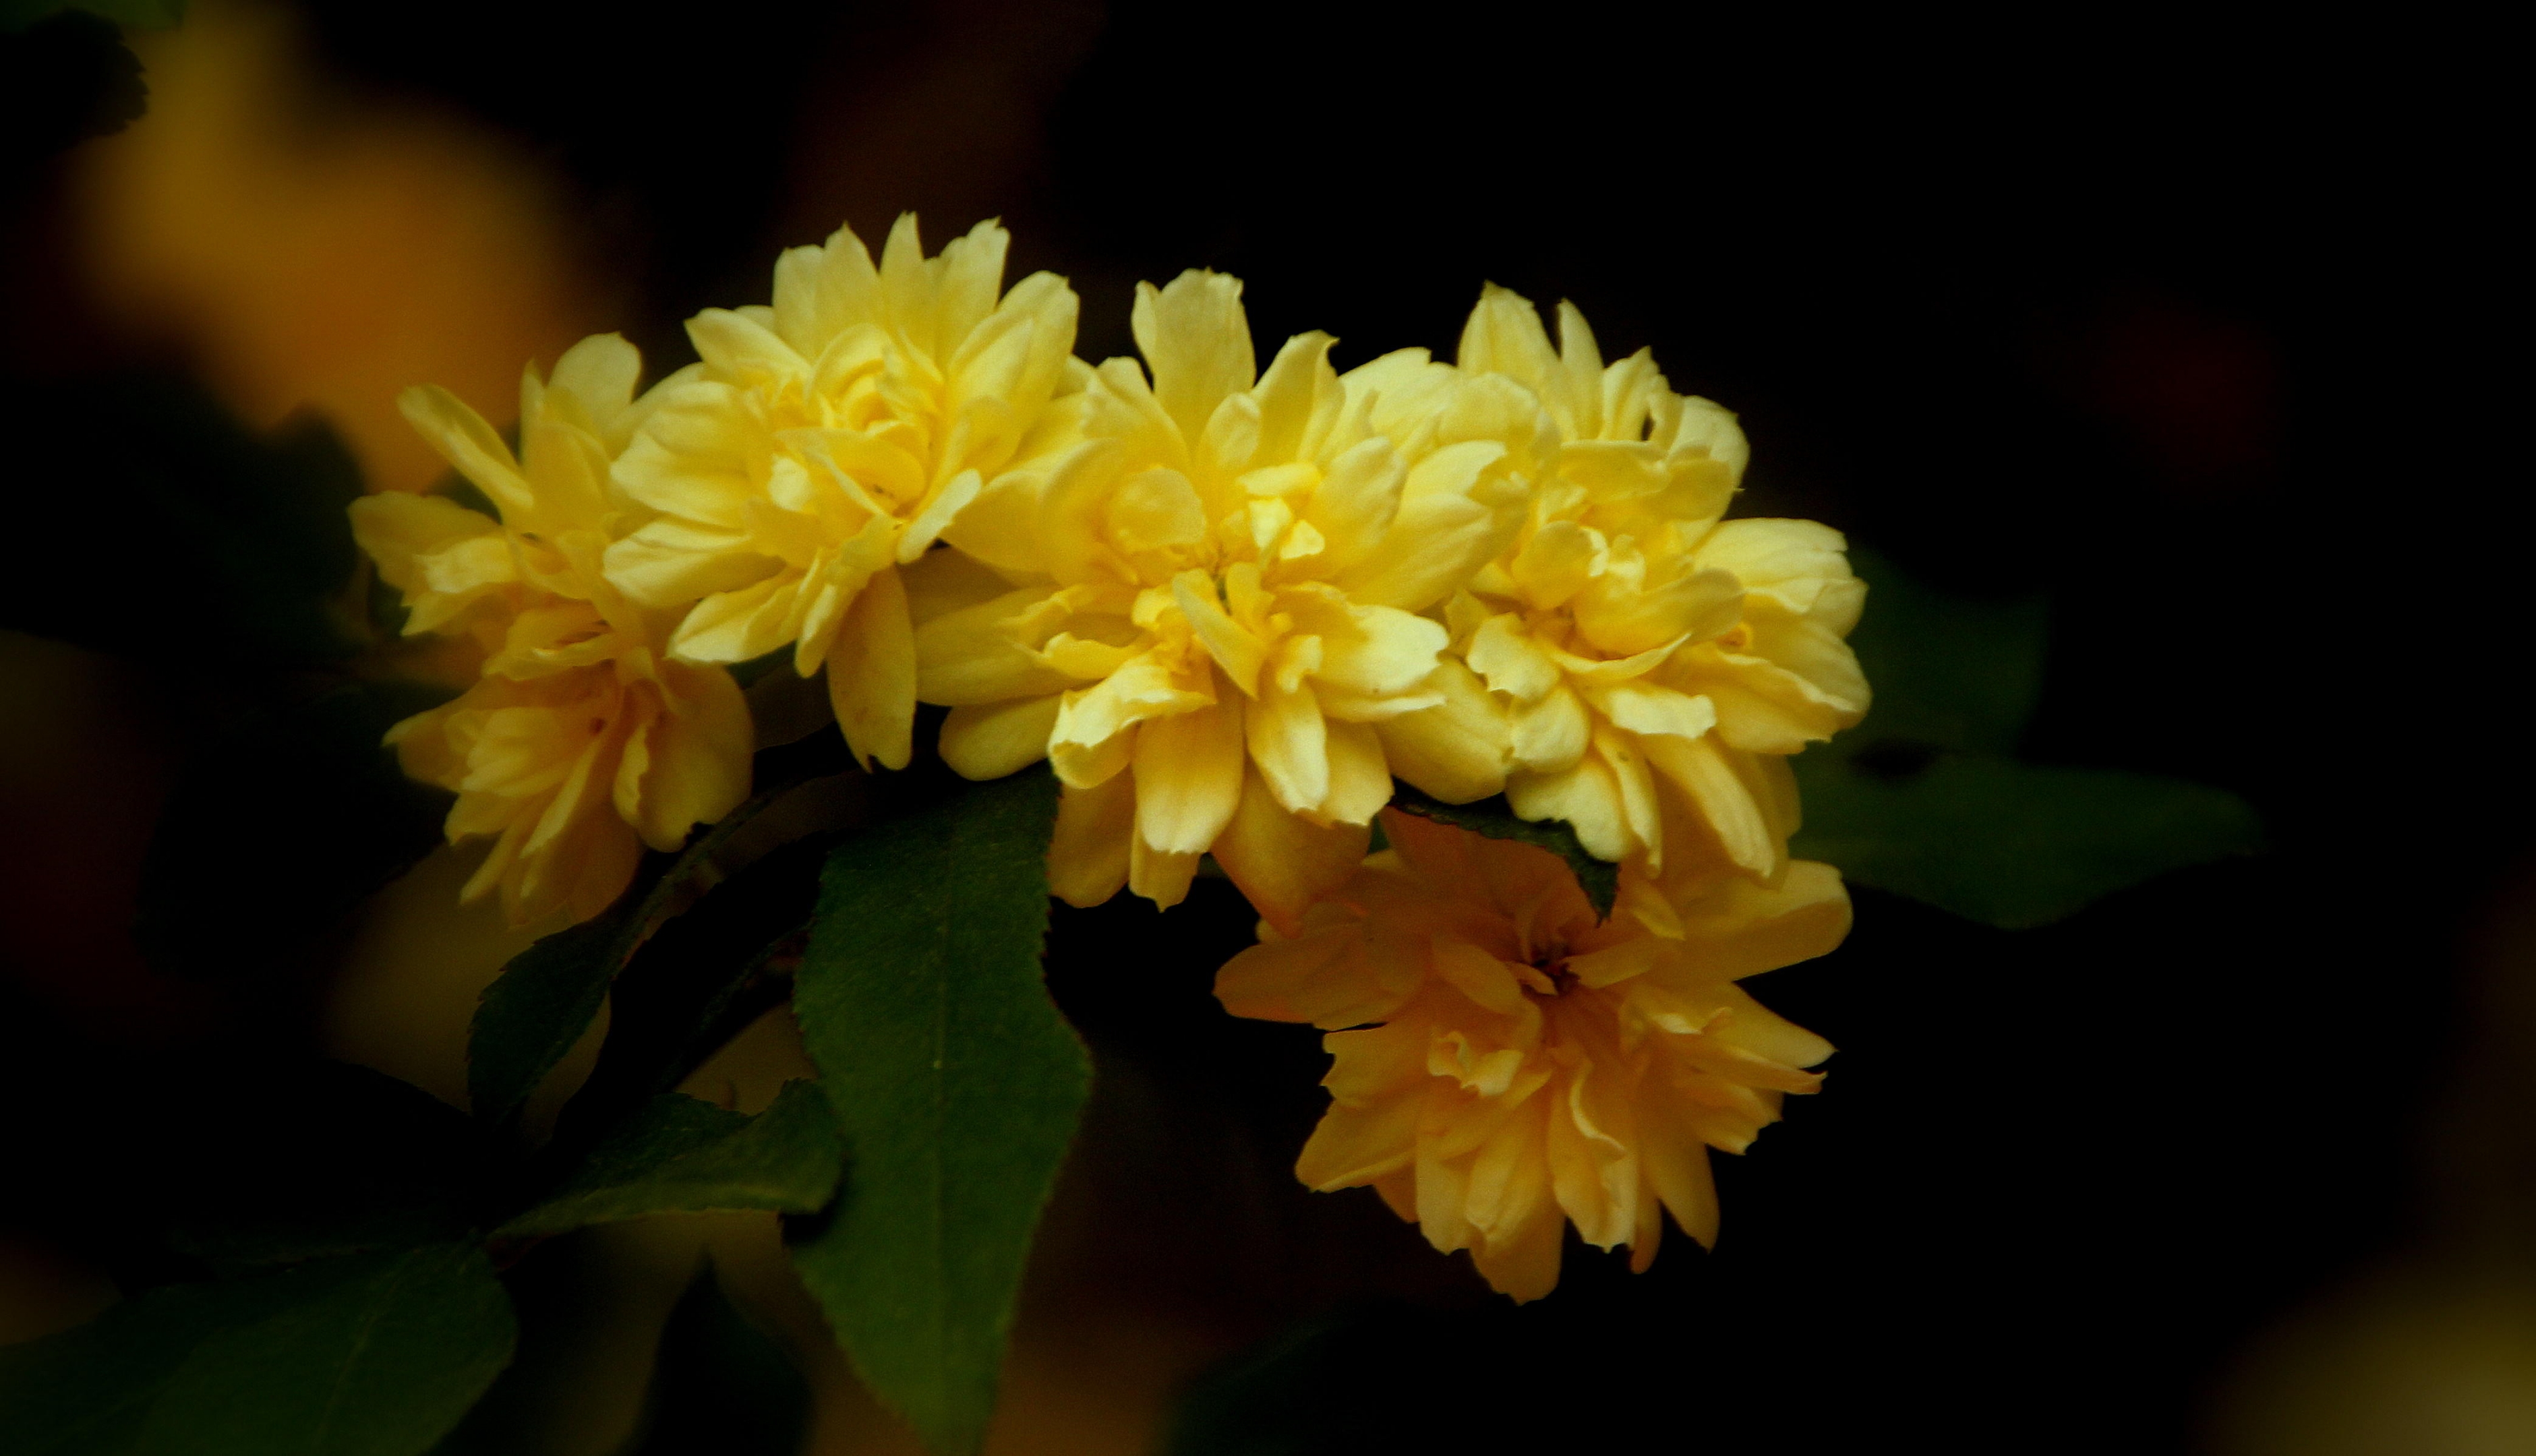 黄木香花是蔷薇科花卉植物,基本与蔷薇同时开放